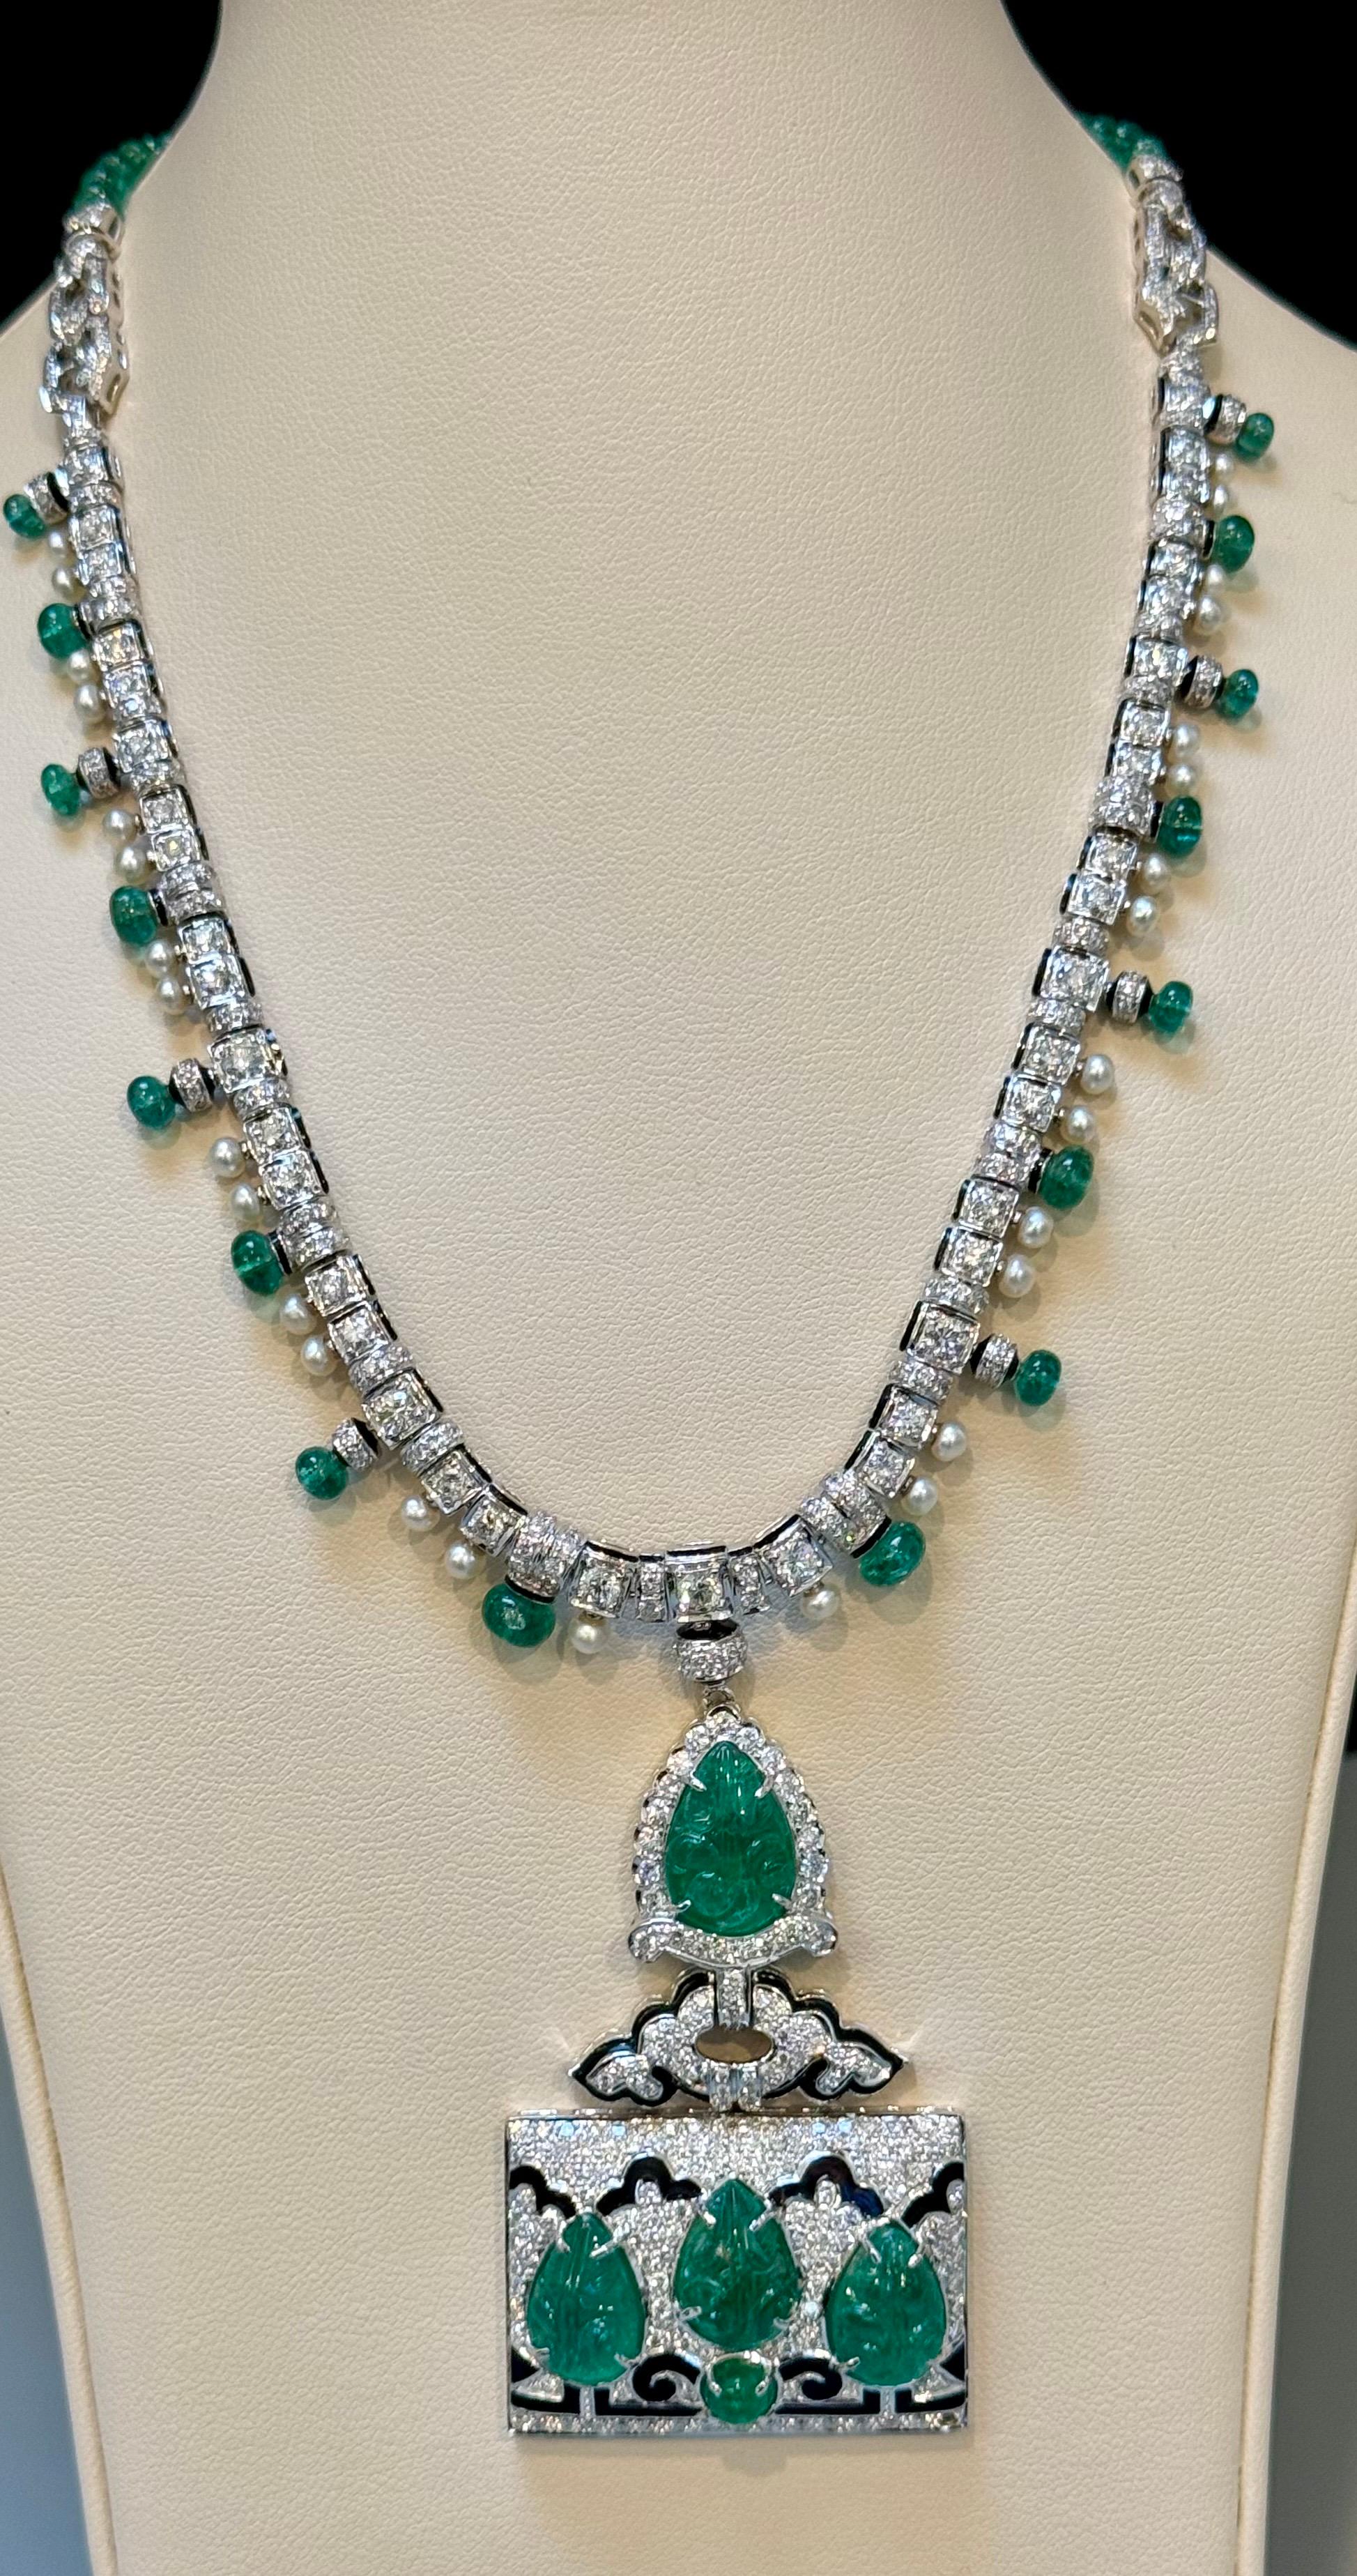 Ca. 25 Karat natürliche geschnitzte Blätter Smaragd & 10 Karat Diamant Art Deco 18 Karat Weißgold Halskette mit Smaragd Perlen
Dieses exquisite Collier besticht durch eine harmonische Mischung aus natürlichen, geschliffenen Smaragden mit einem